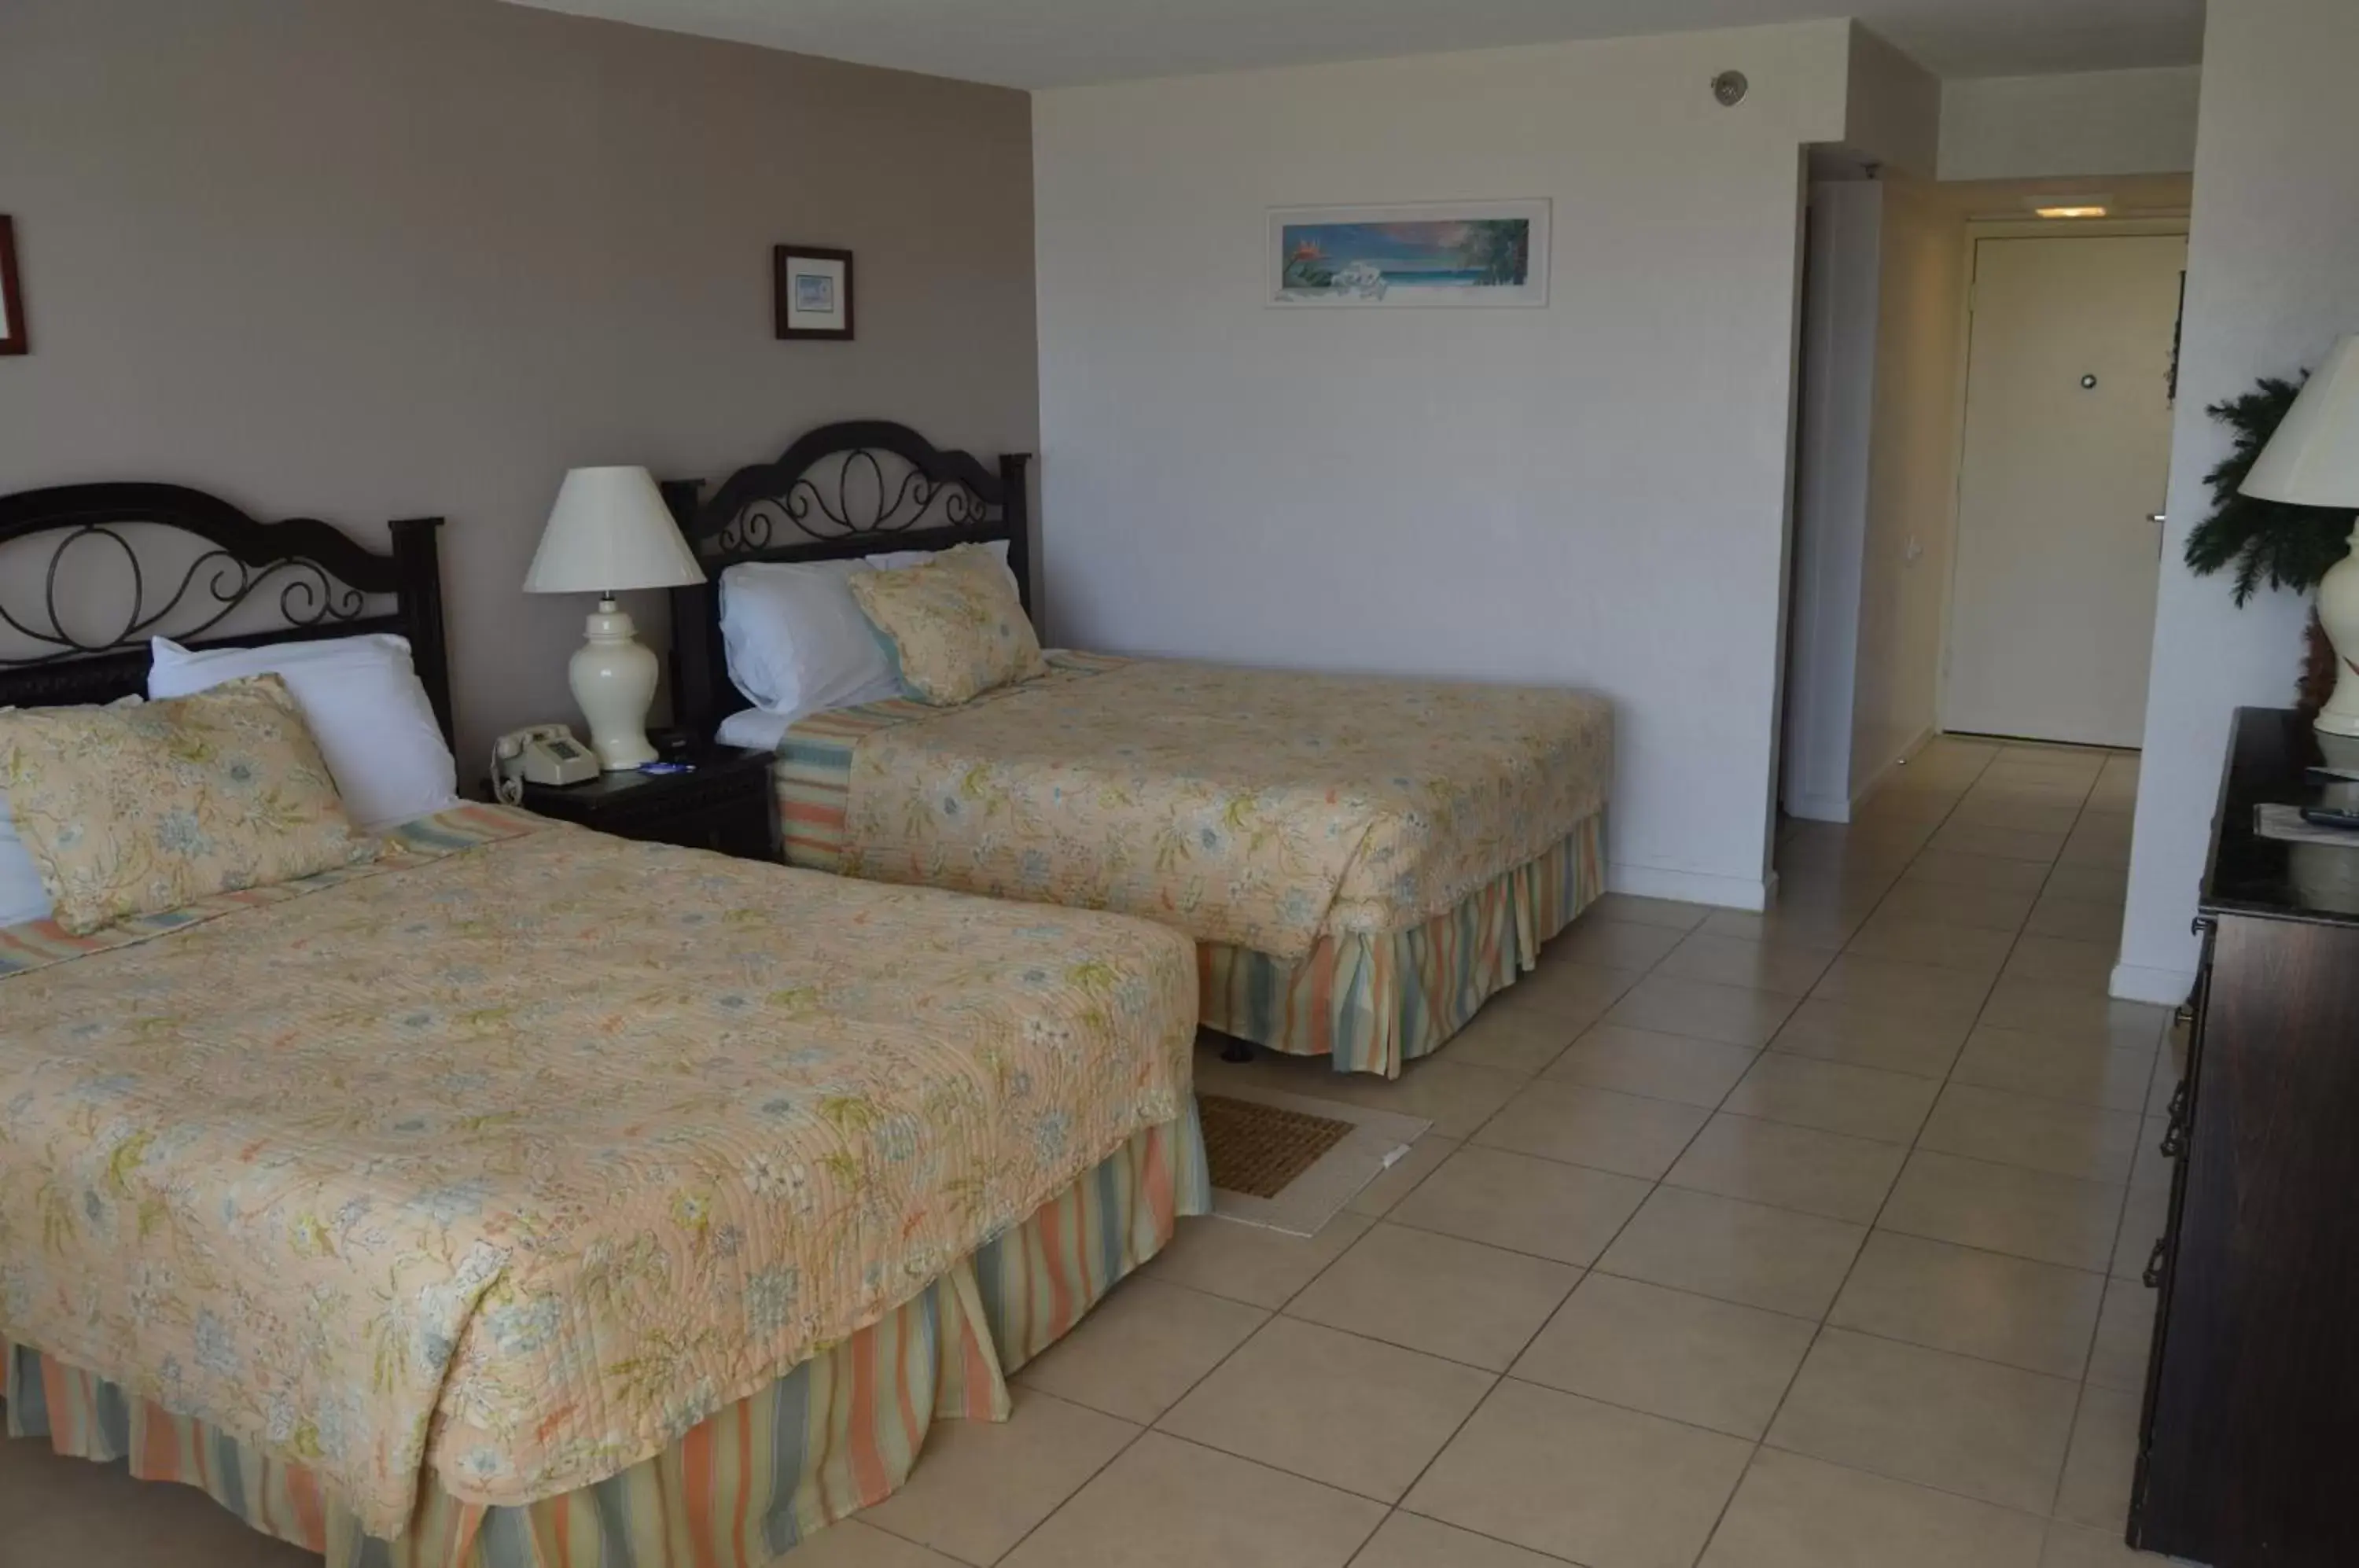 Queen Room with Two Queen Beds - Ocean View in Fountain Beach Resort - Daytona Beach